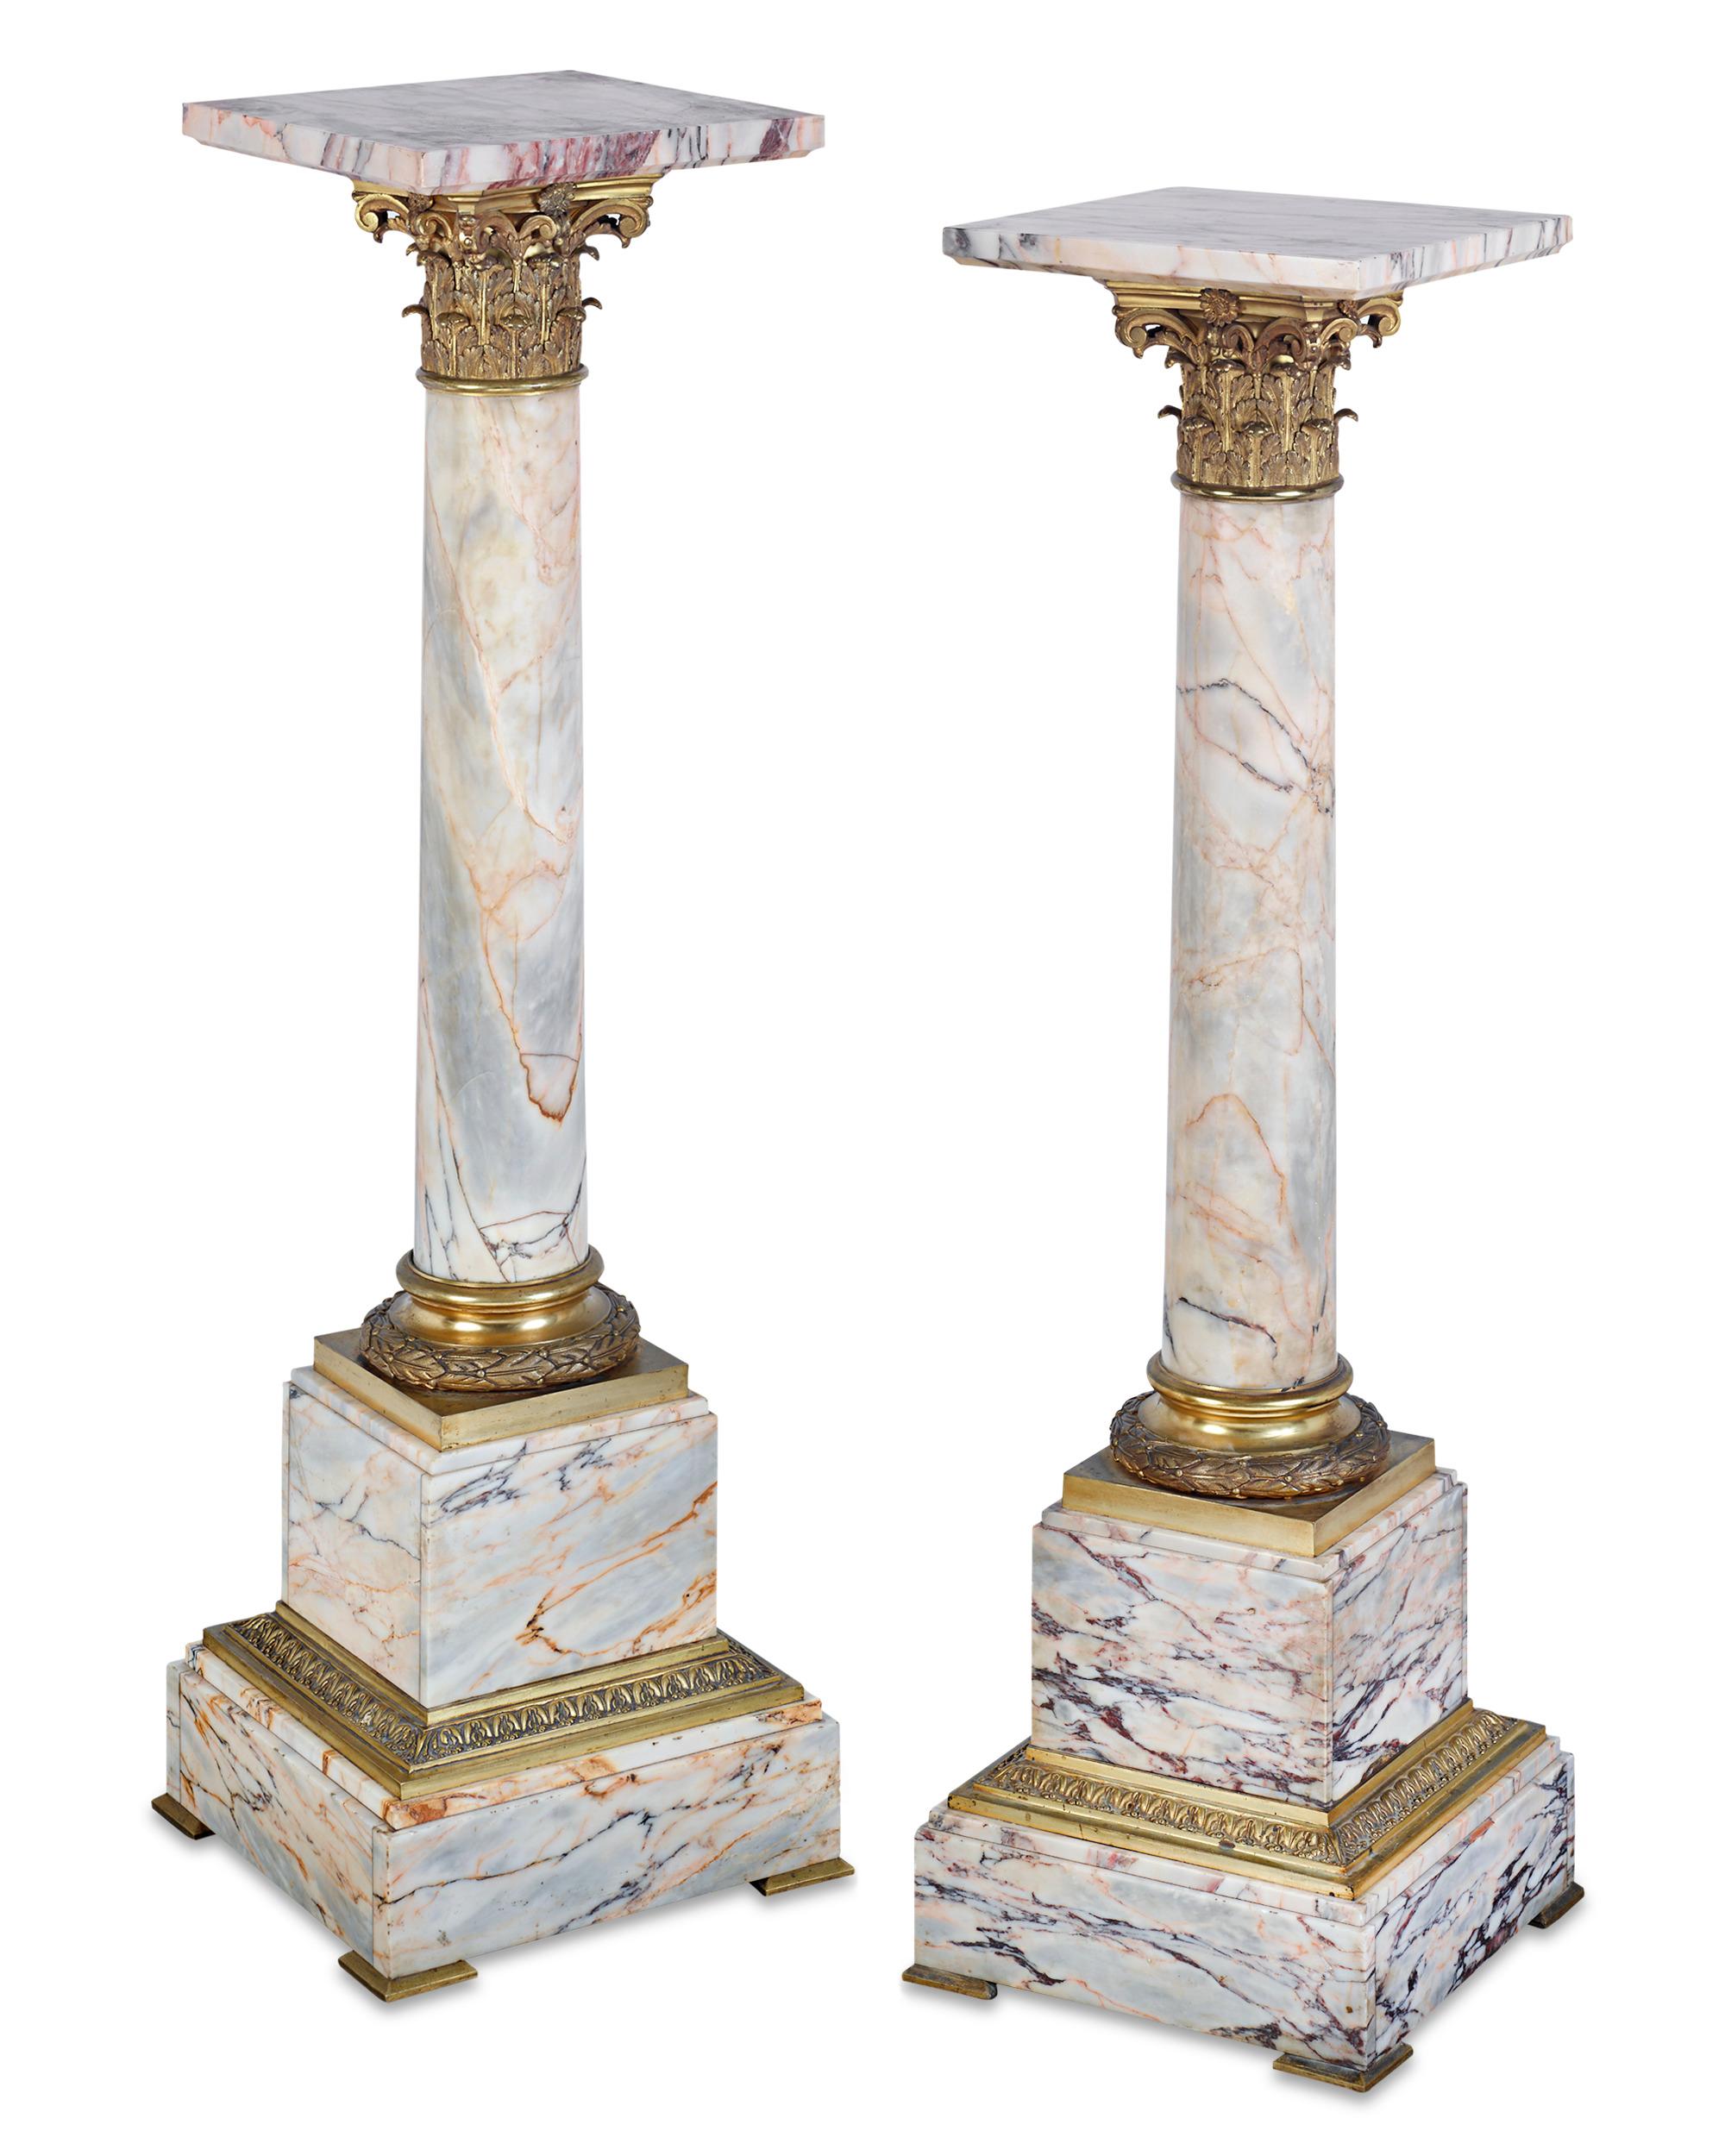 Ein klassischer neoklassischer Stil zeichnet dieses stattliche Paar von Sockeln aus weißem Marmor mit farbigen Äderungen aus. In Form korinthischer Säulen mit glänzenden Kapitellen aus vergoldeter Bronze können die beeindruckenden Stücke als